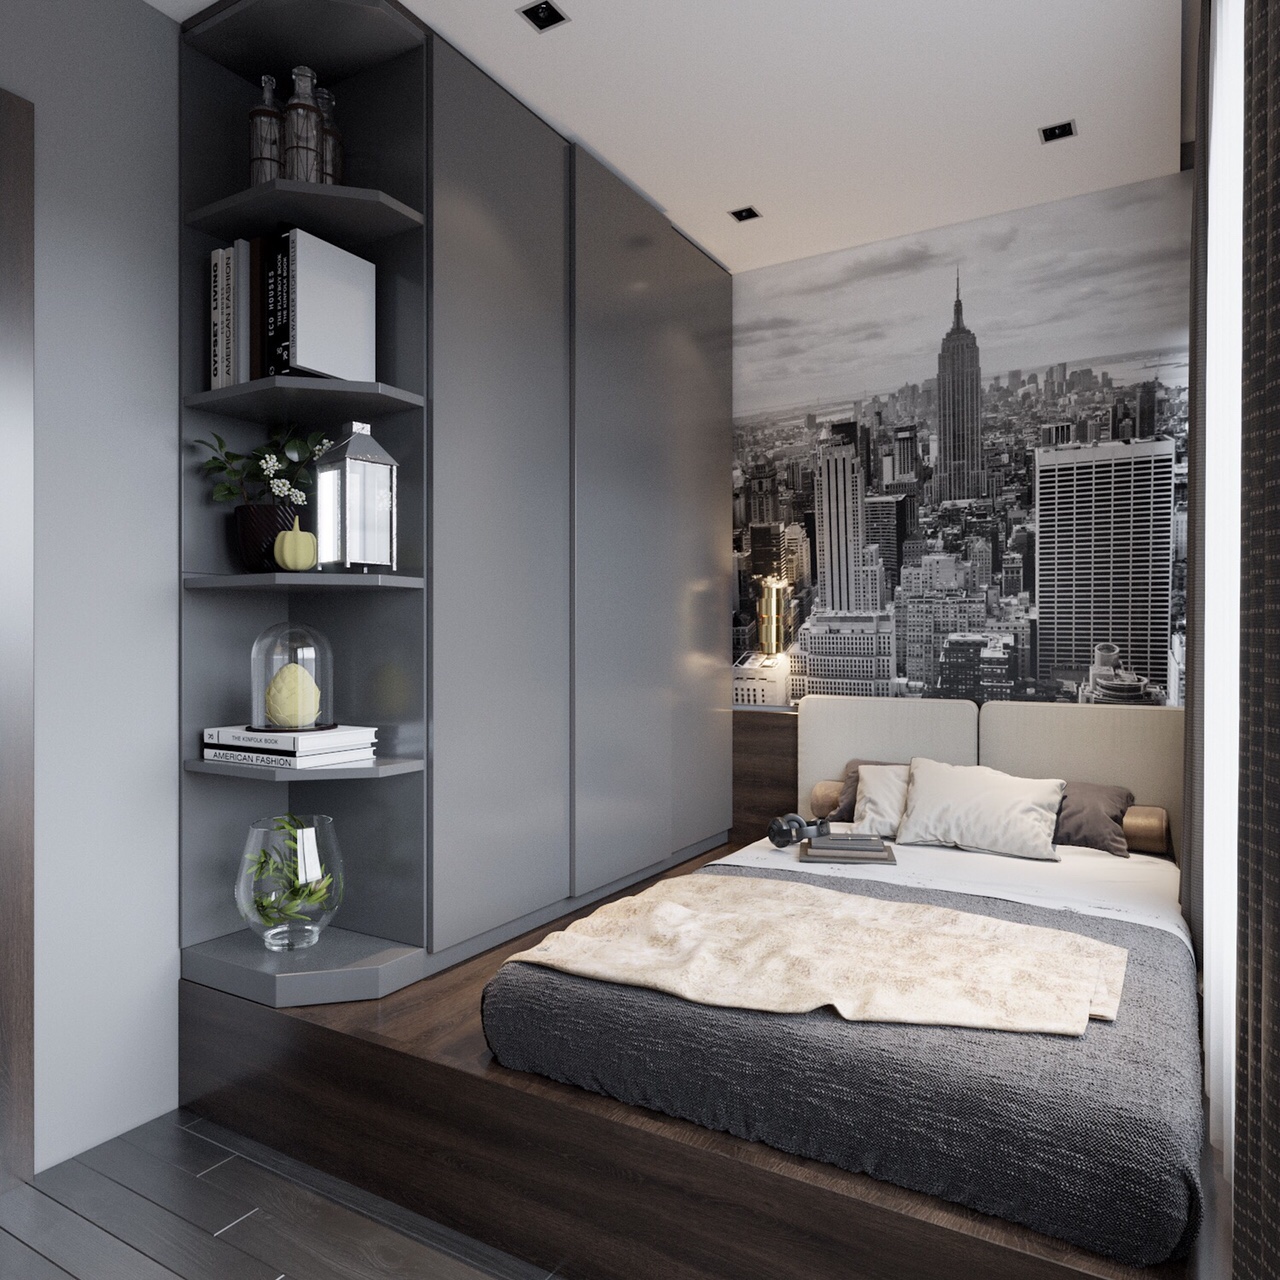 Thiết kế nội thất căn hộ Vinhomes Metropolis - Phòng ngủ nhỏ